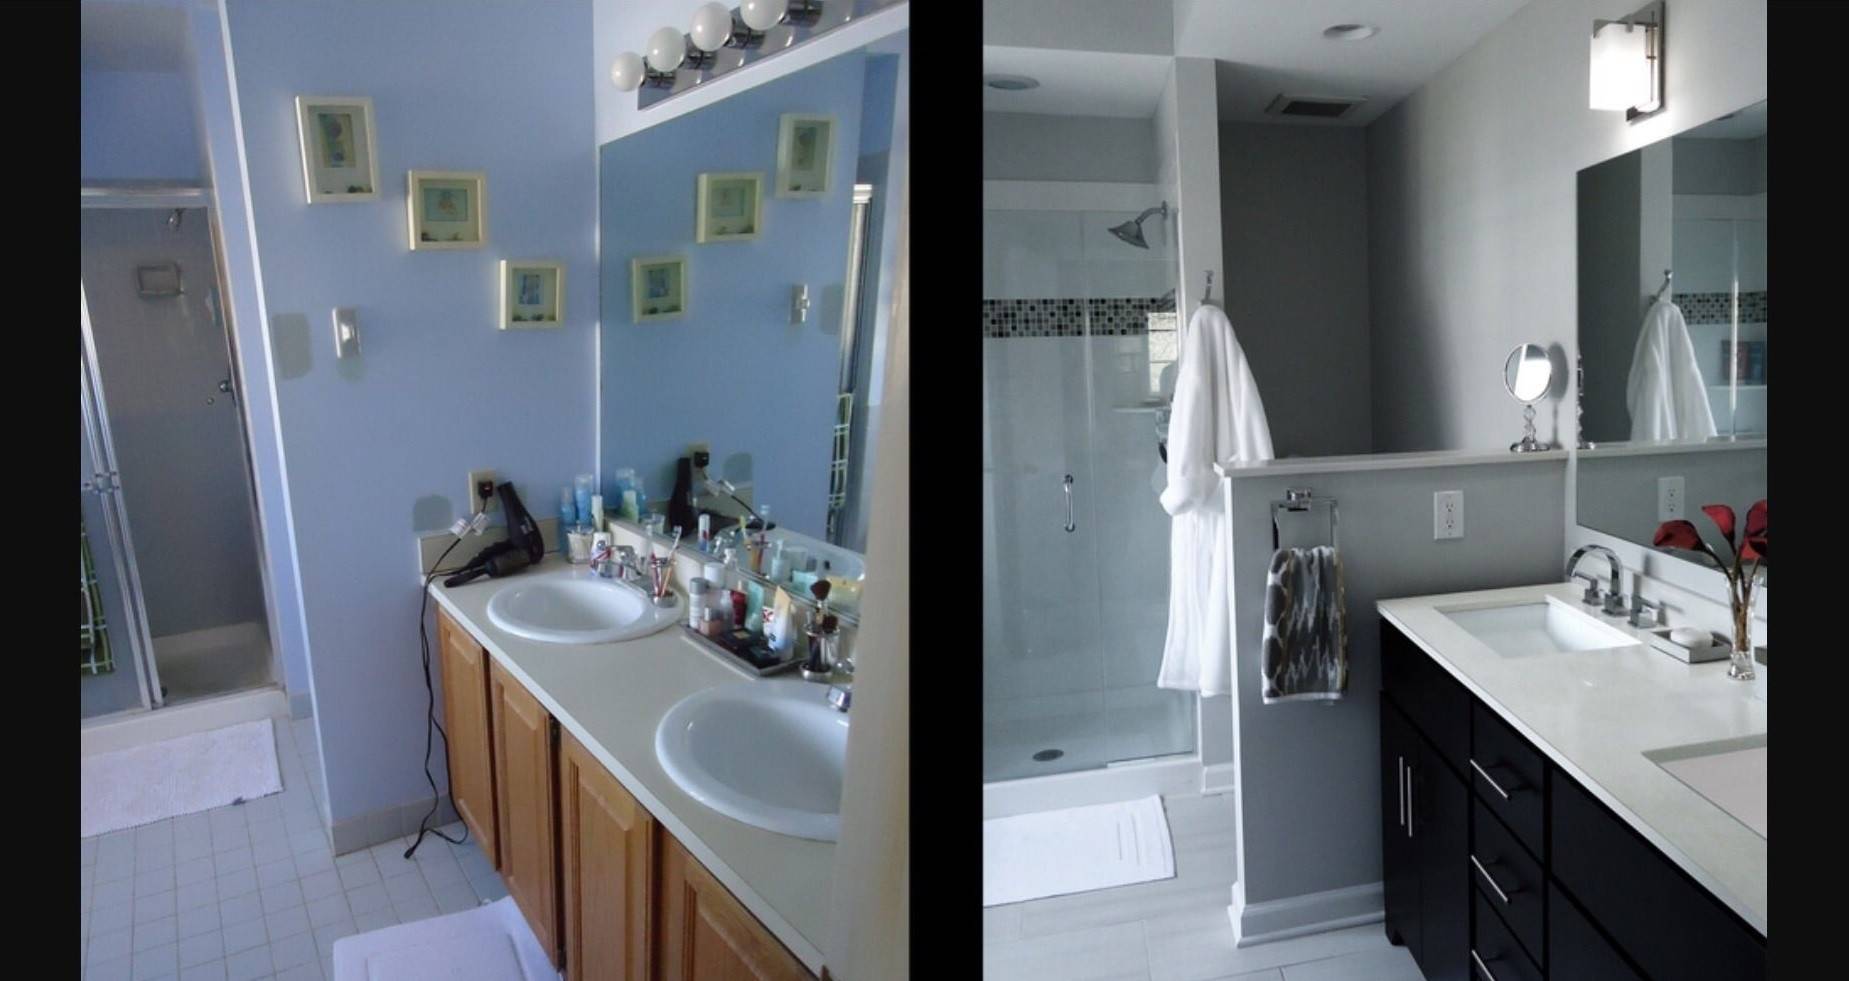 Муж потратил больше месяца, чтобы сделать обалденный ремонт в ванной! фото до и после